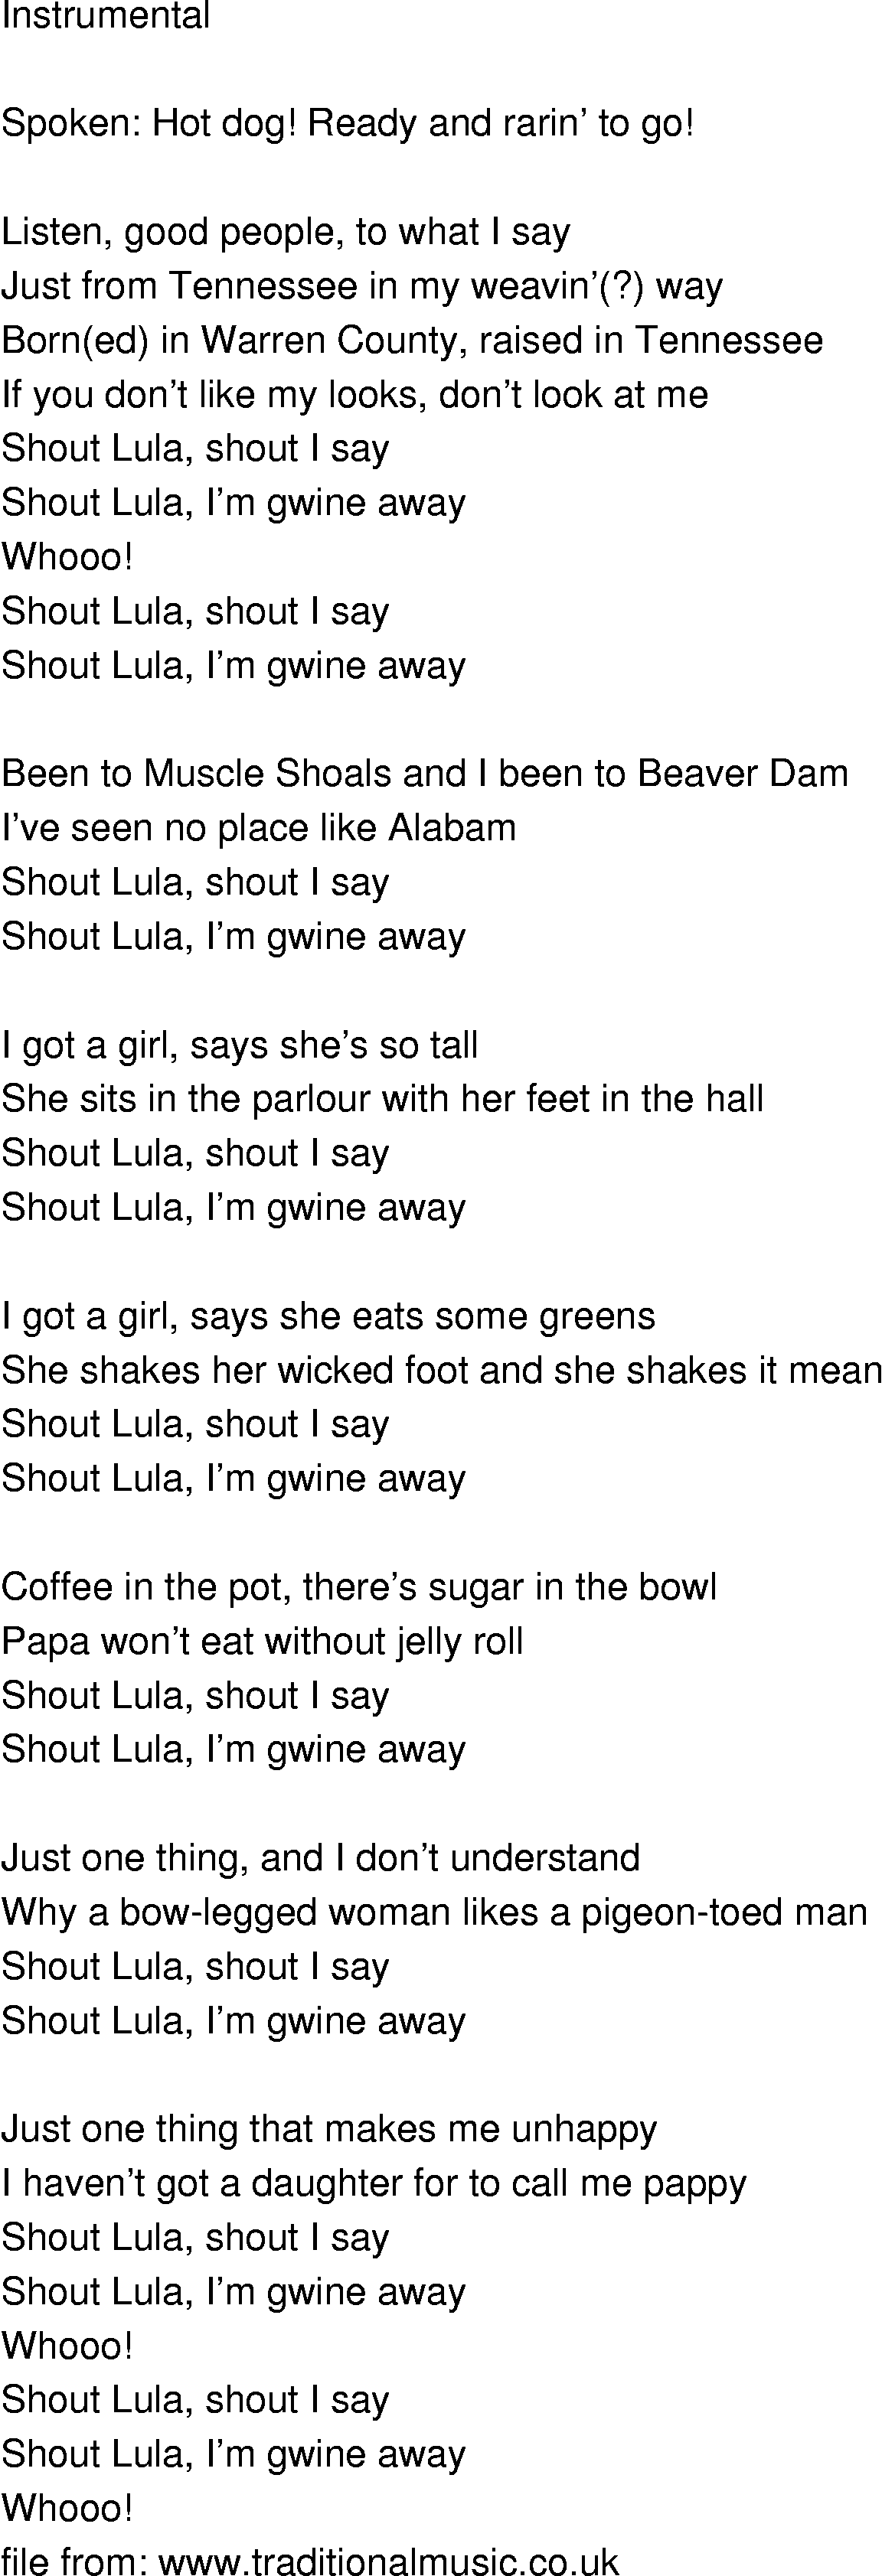 Old-Time (oldtimey) Song Lyrics - shout lula